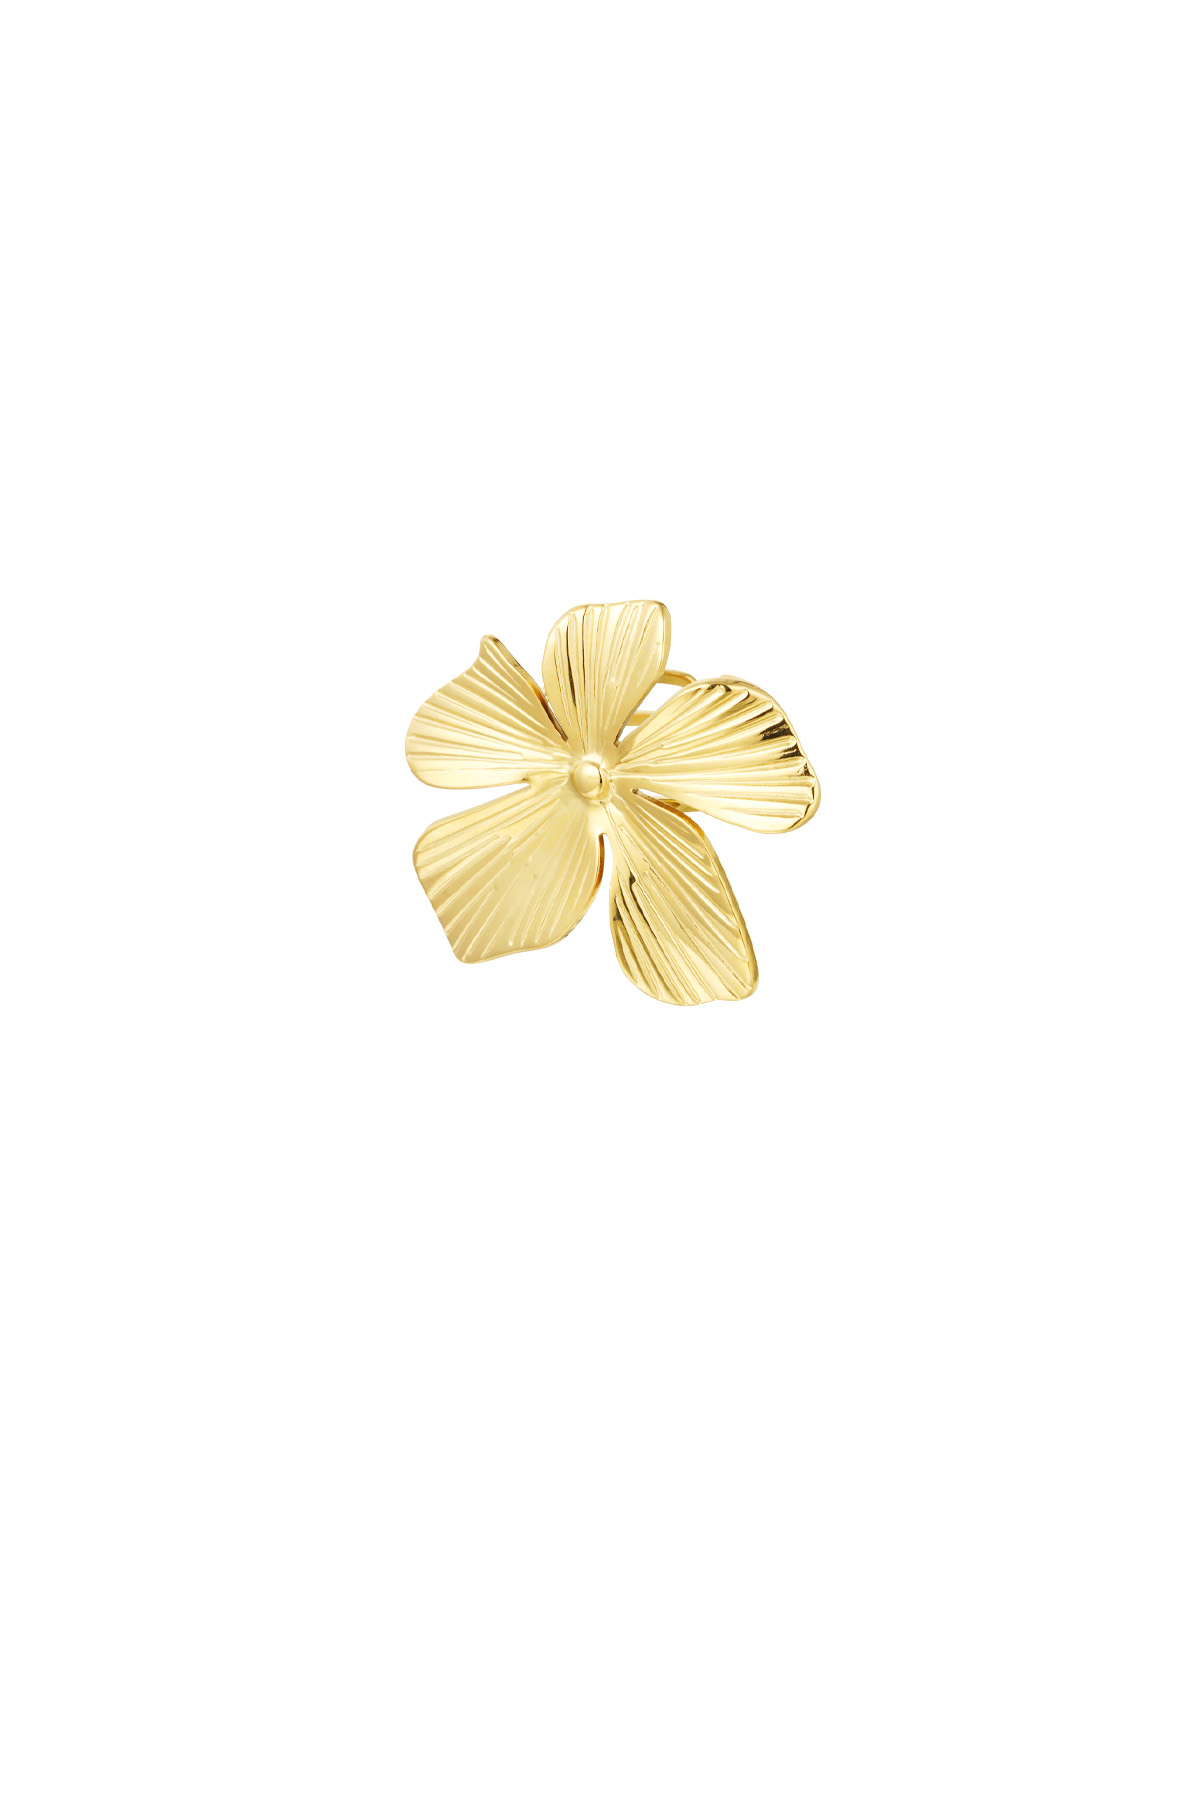 Anello fiore grande - oro